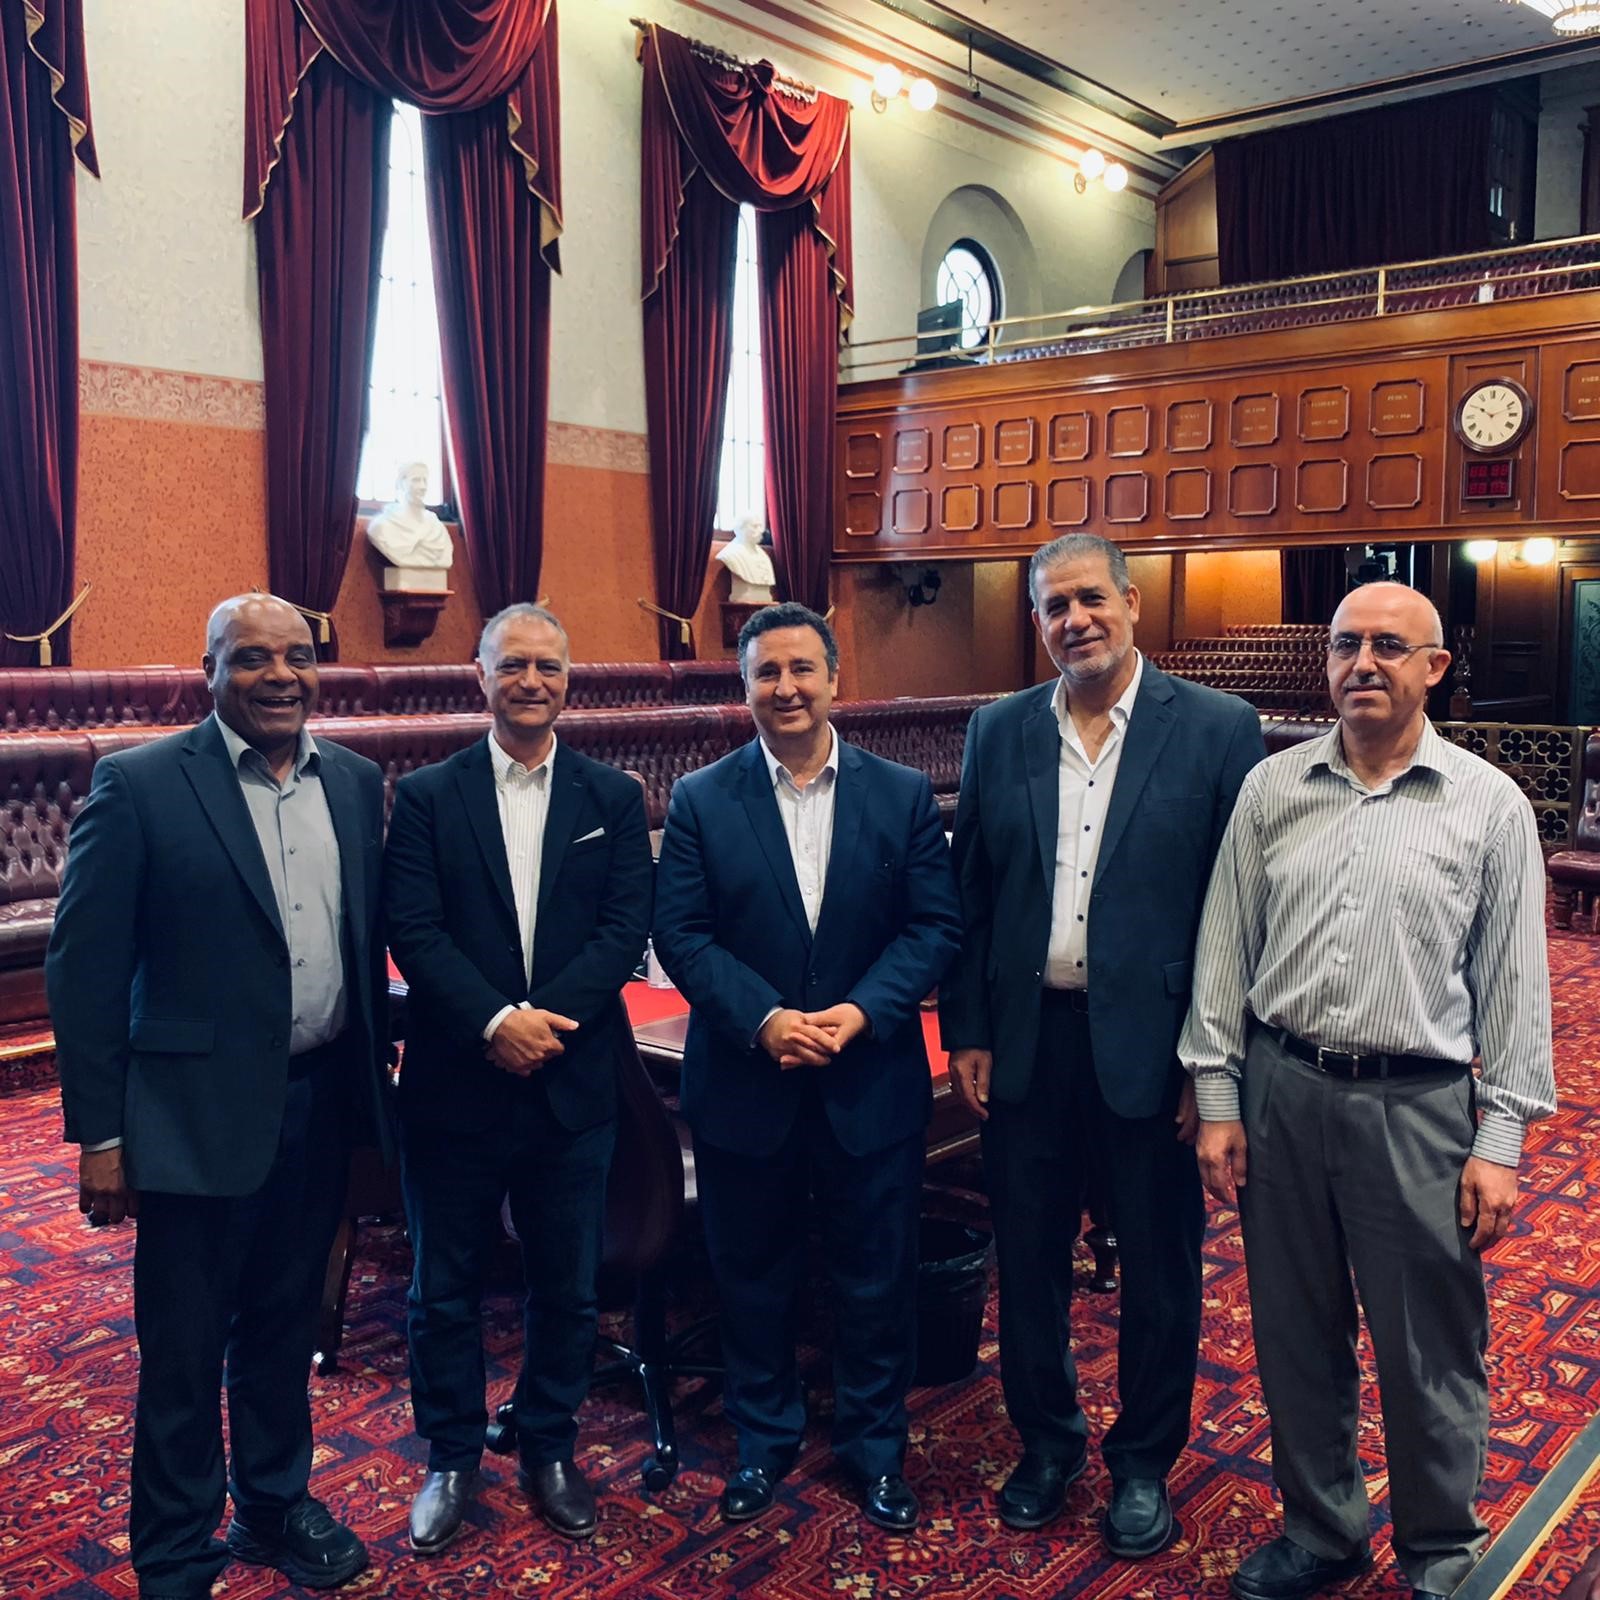 زيارة وفد الجمعية الأسترالية الأردنية للنائب شوكت مسلماني في مبنى برلمان نيوساوث ويلز